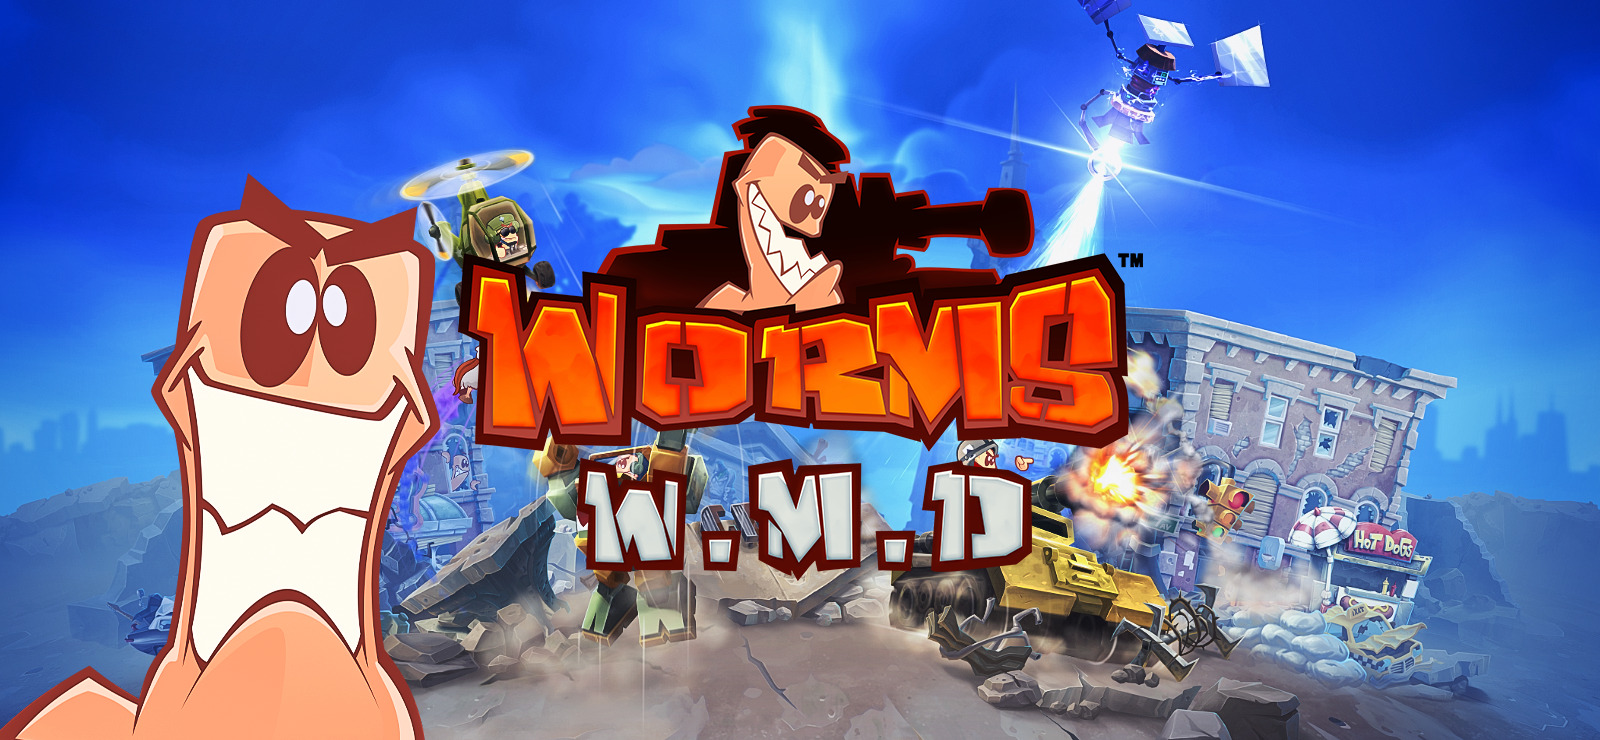 Mandag Hest Långiver 80% Worms W.M.D on GOG.com